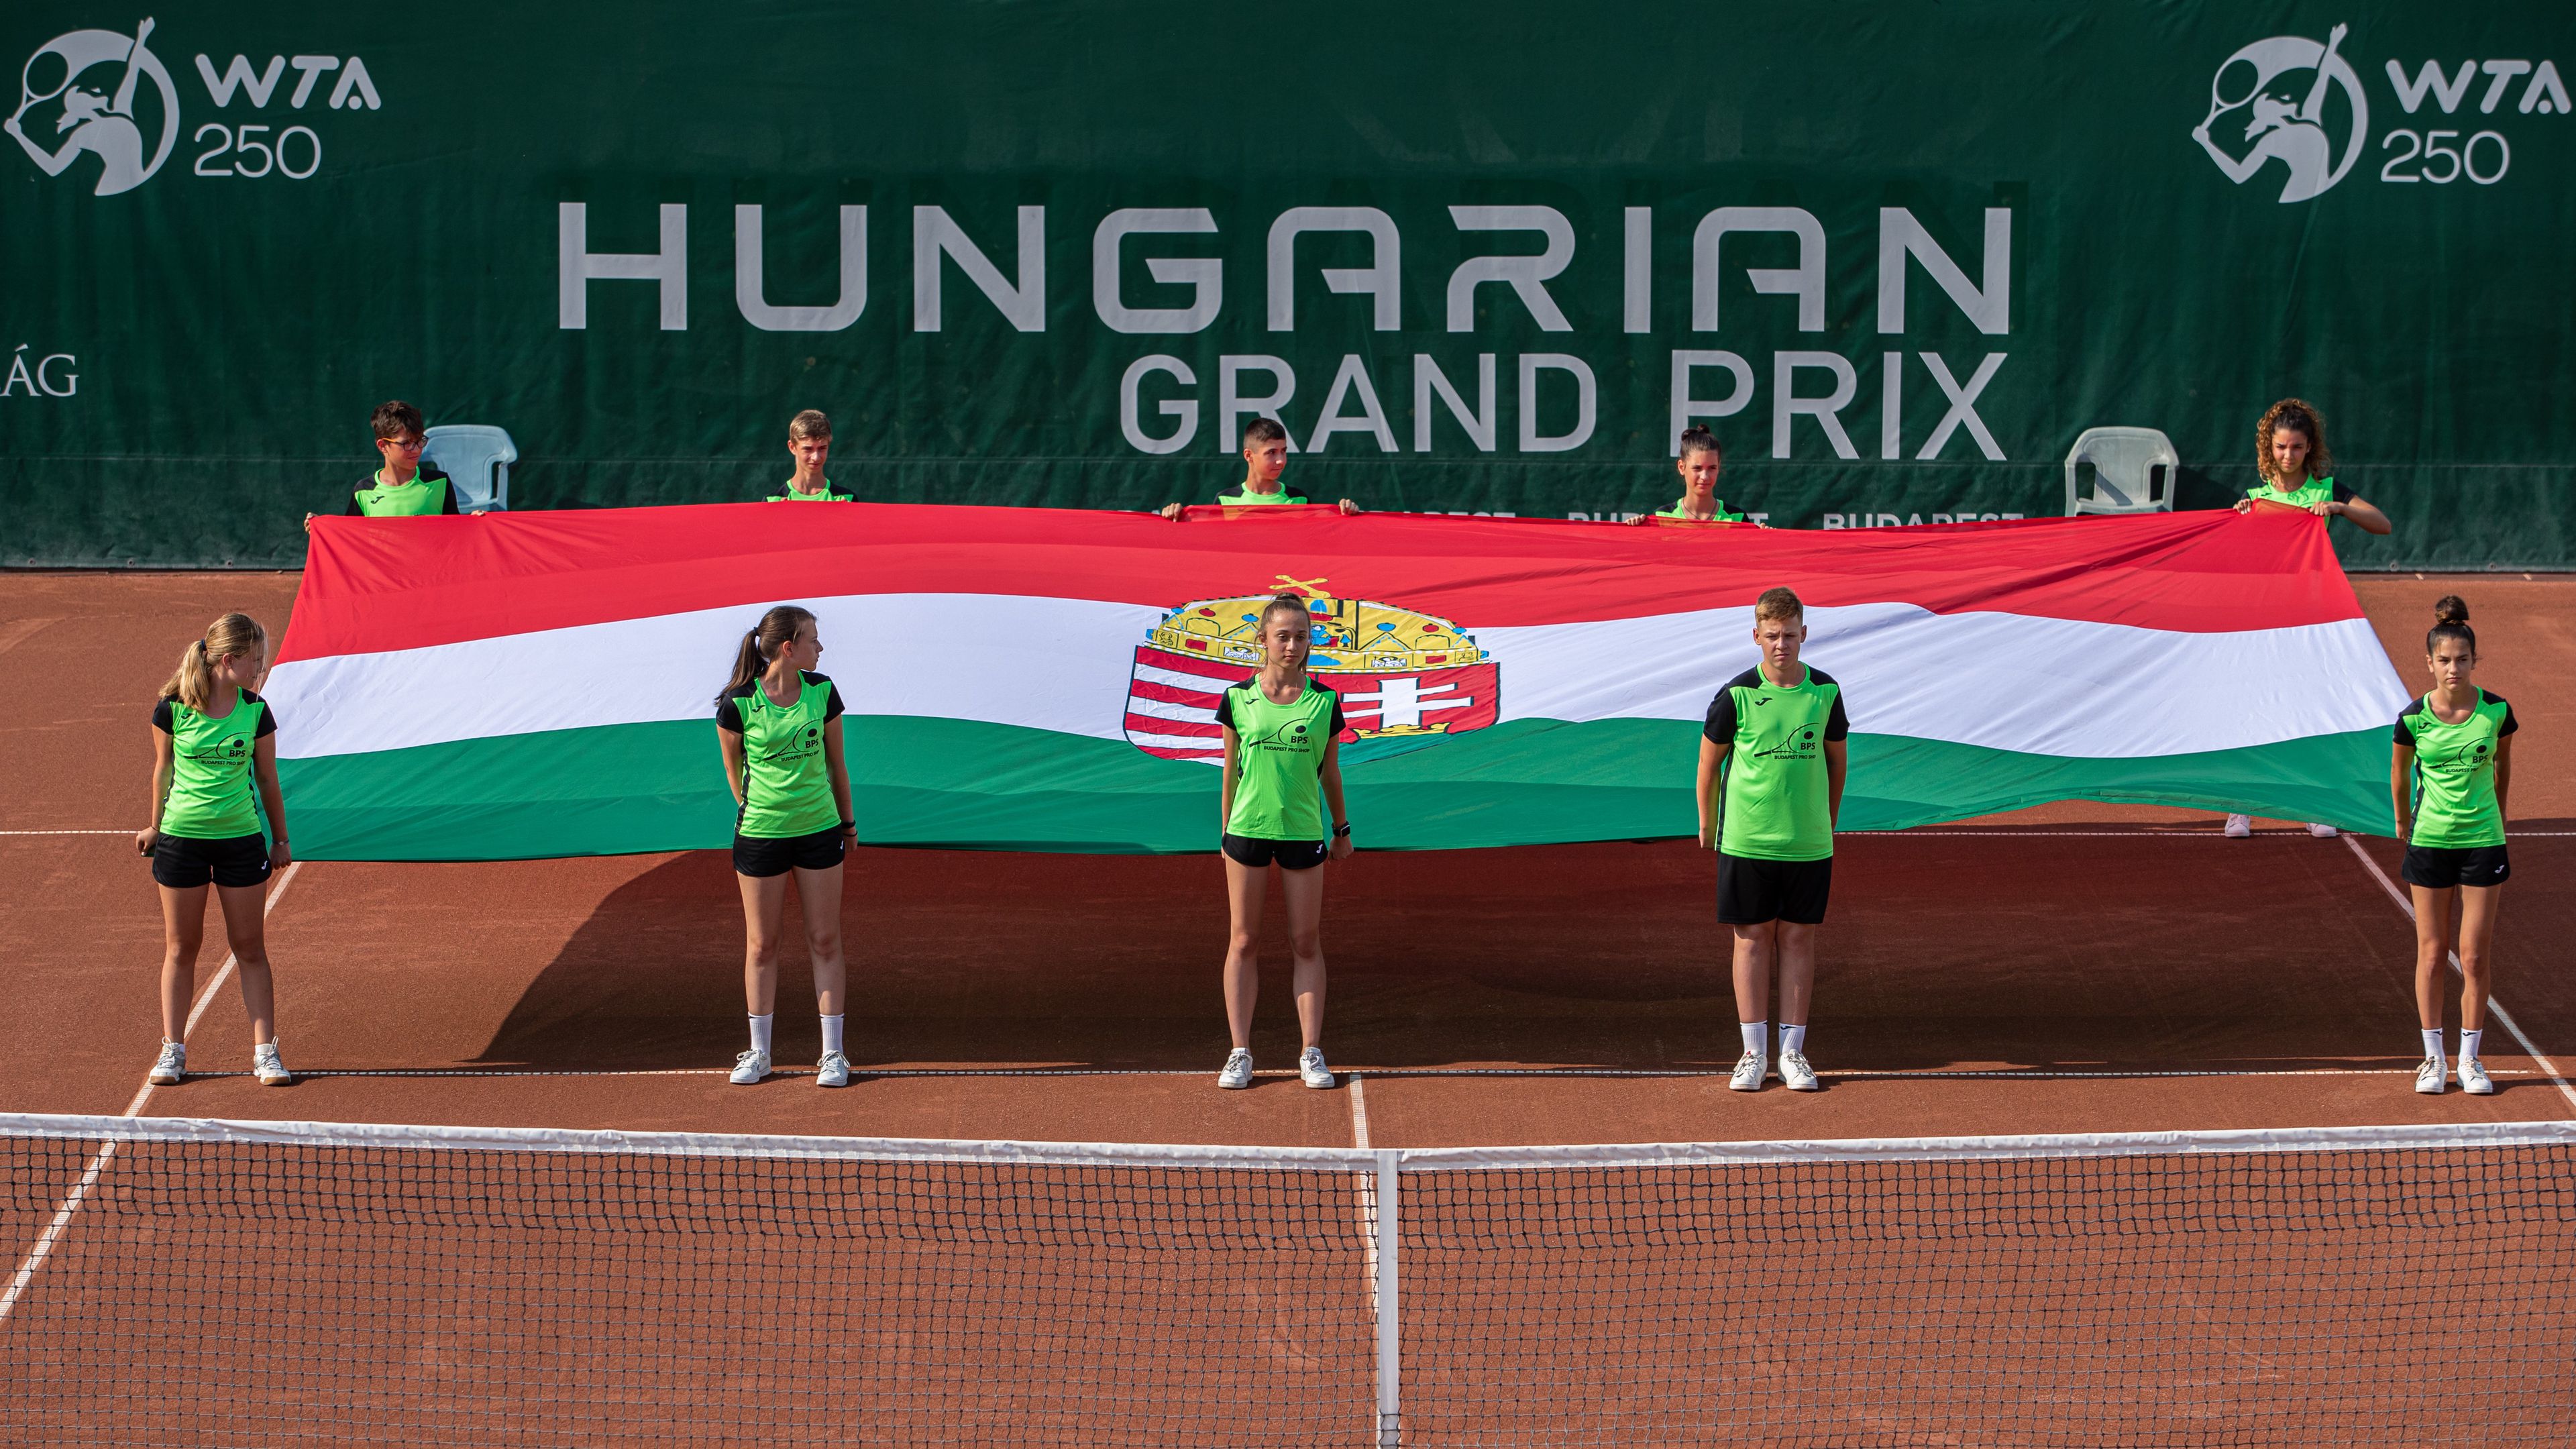 Kétségessé vált a budapesti tenisztorna jövője